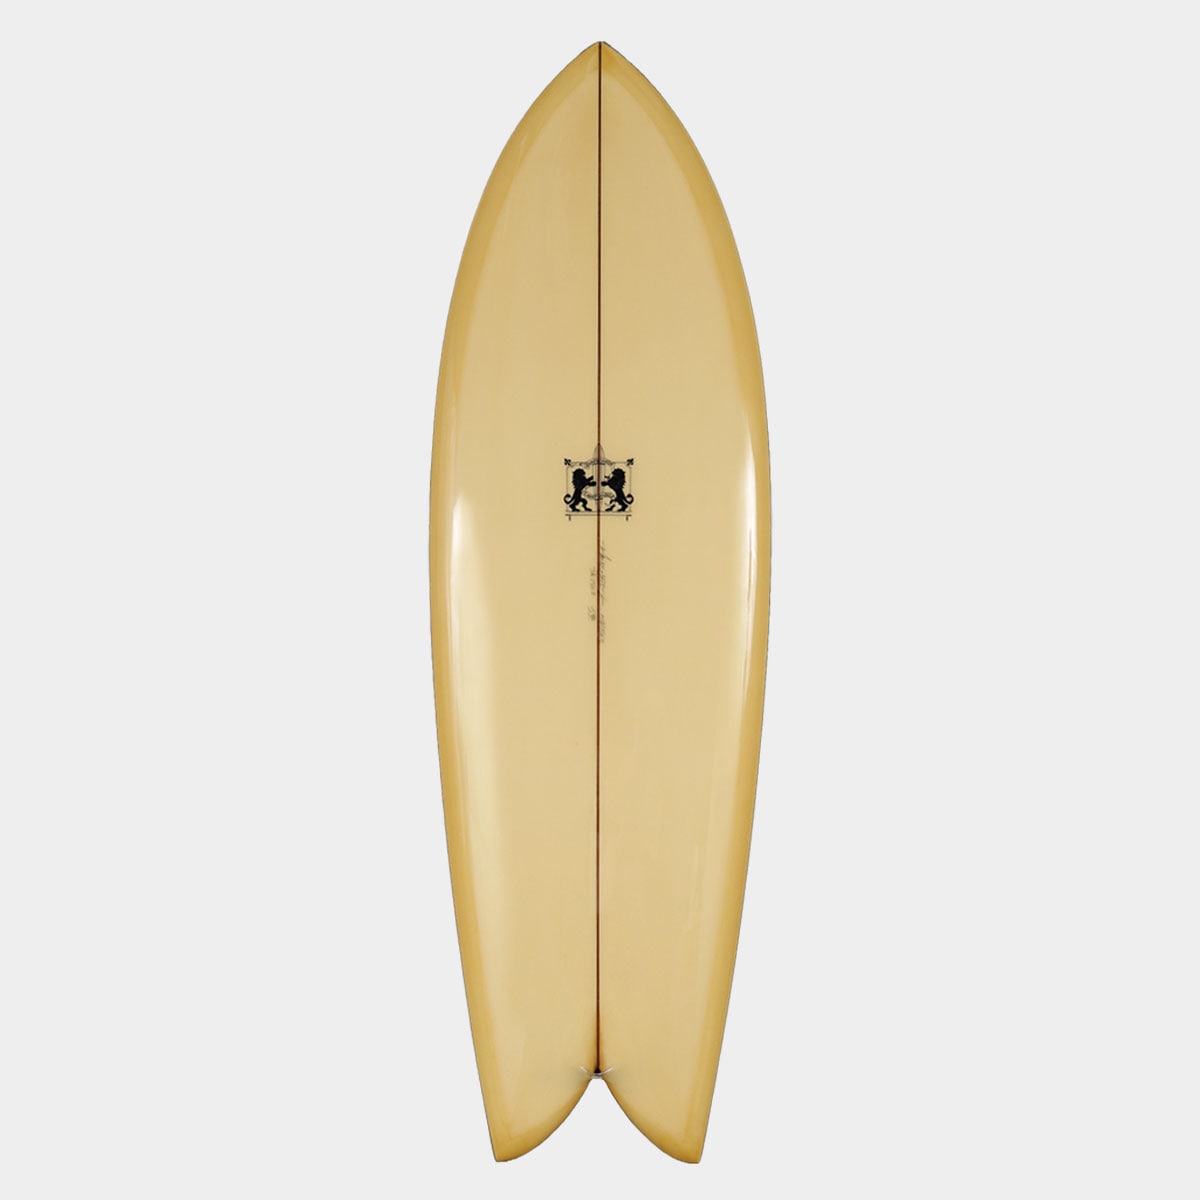 ラリーメイビル サーフボード クラッシック フィッシュ 5'8 サーフィン オンフィン ツインフィン surfboards LARRY MABILE FISH 5.8【jk2302】